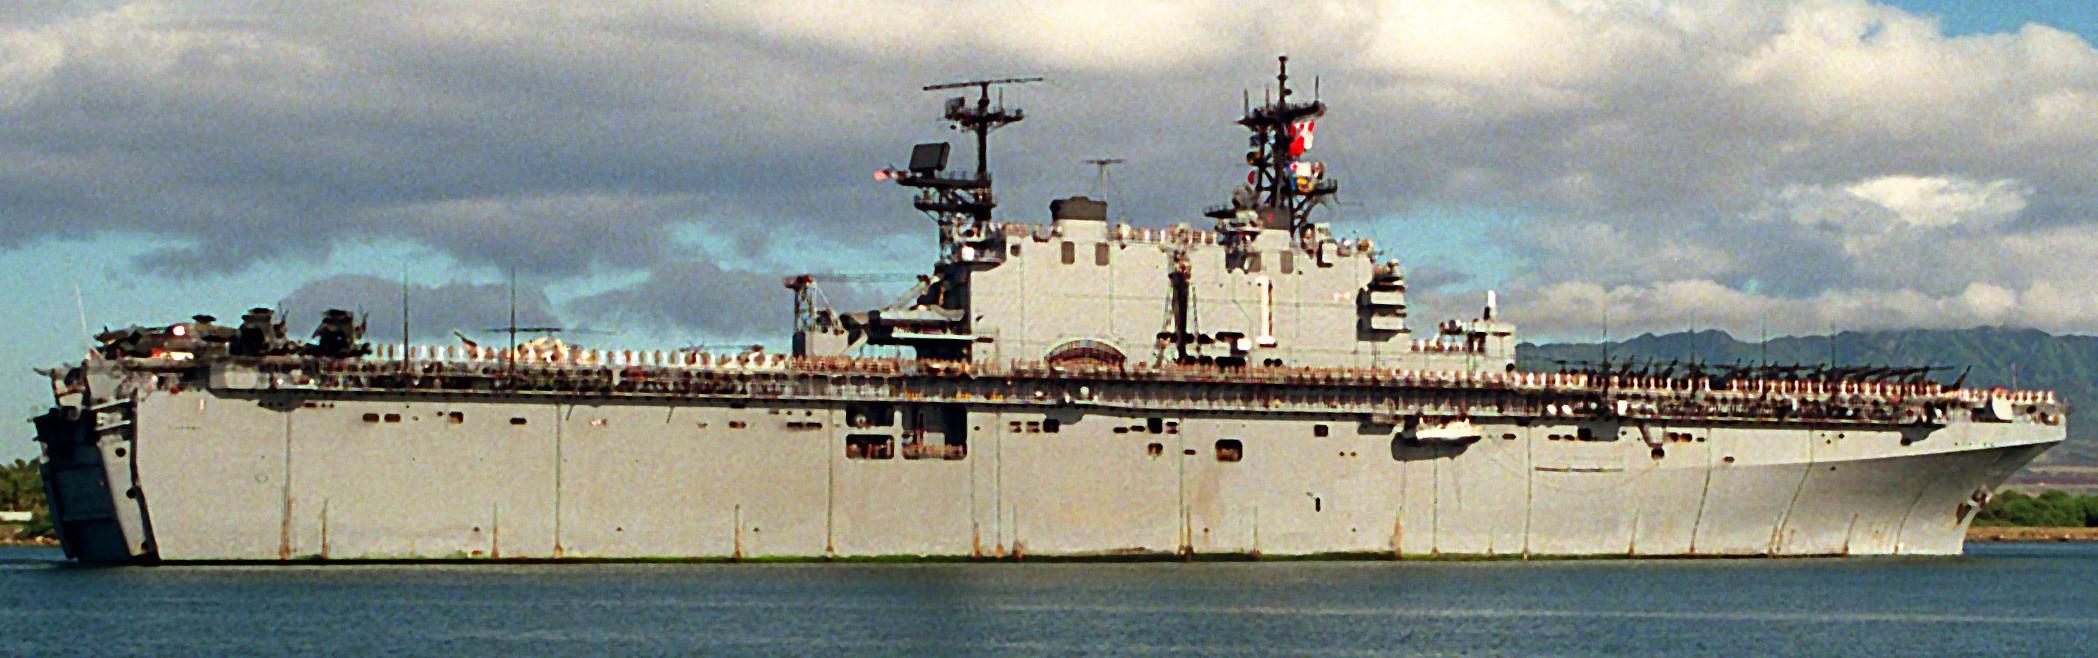 lha-1 uss tarawa amphibious assault ship us navy 78